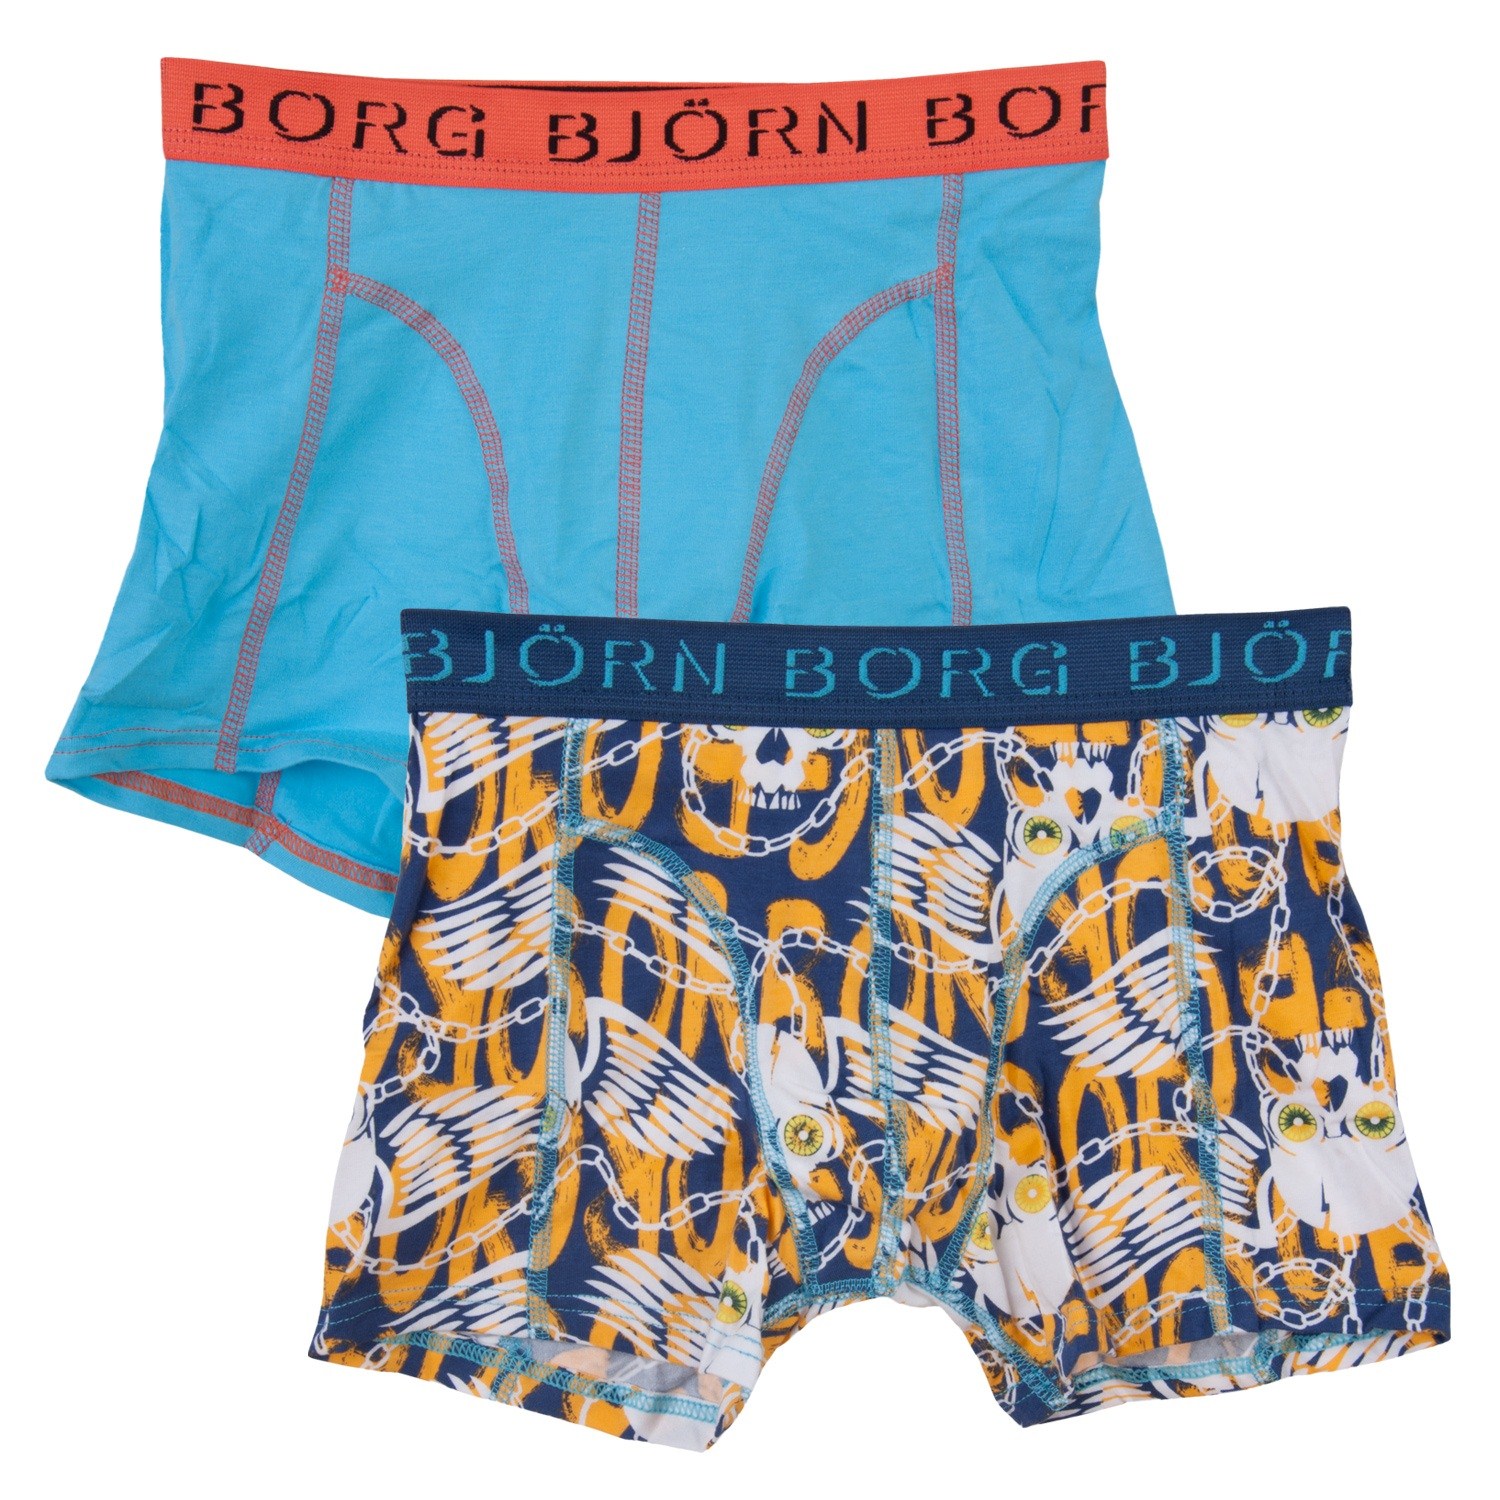 Björn Borg Shorts for Boys 79152